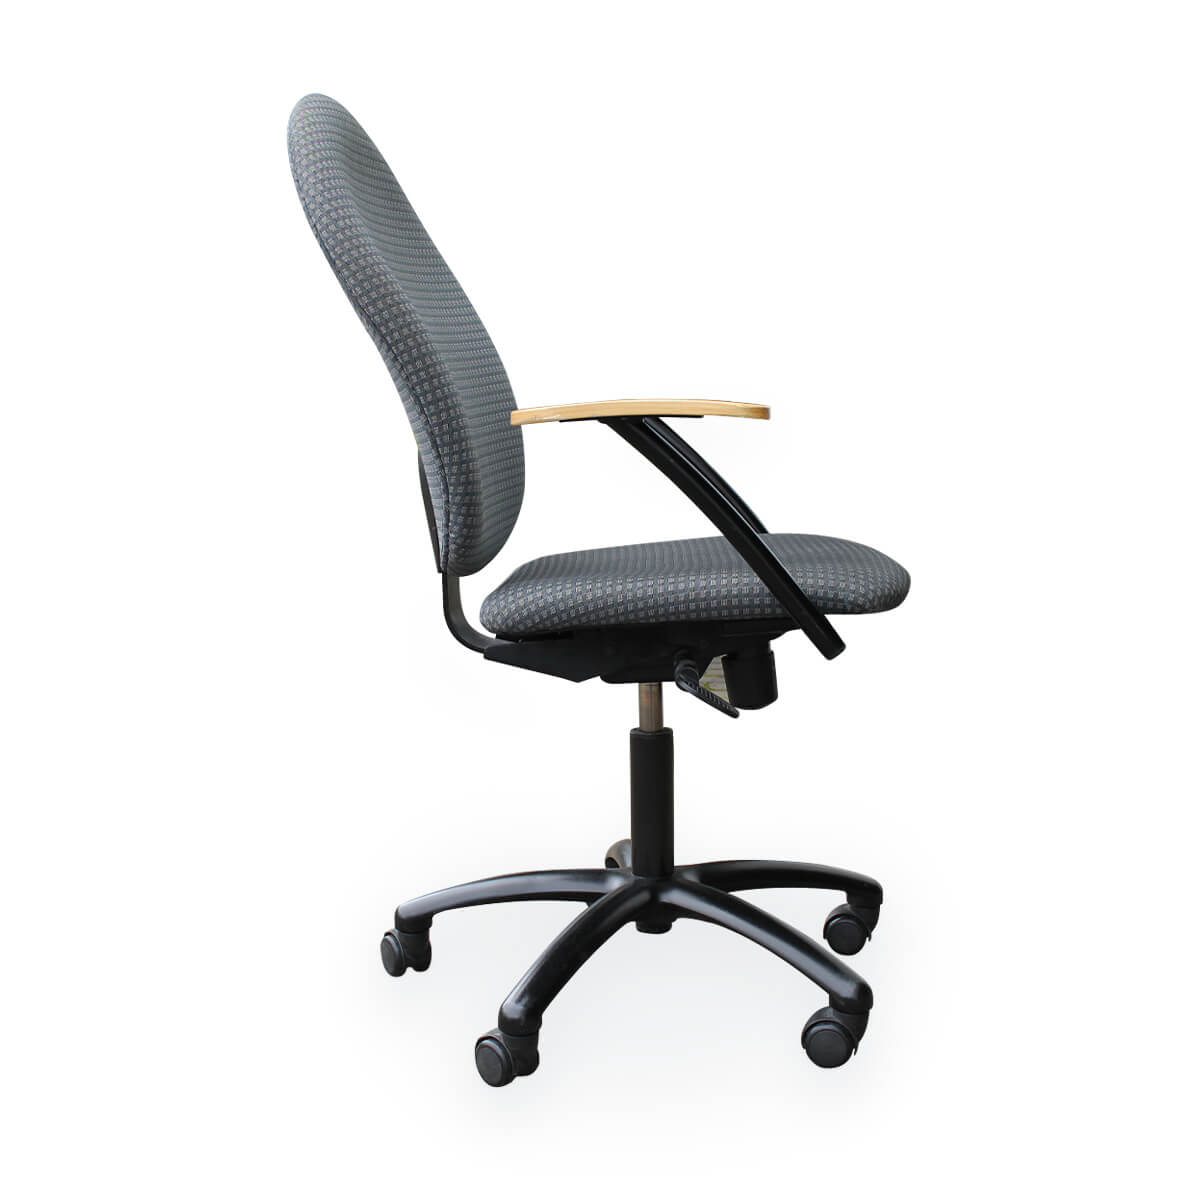 Naudotos biuro kėdės - Kitas - Narbutas